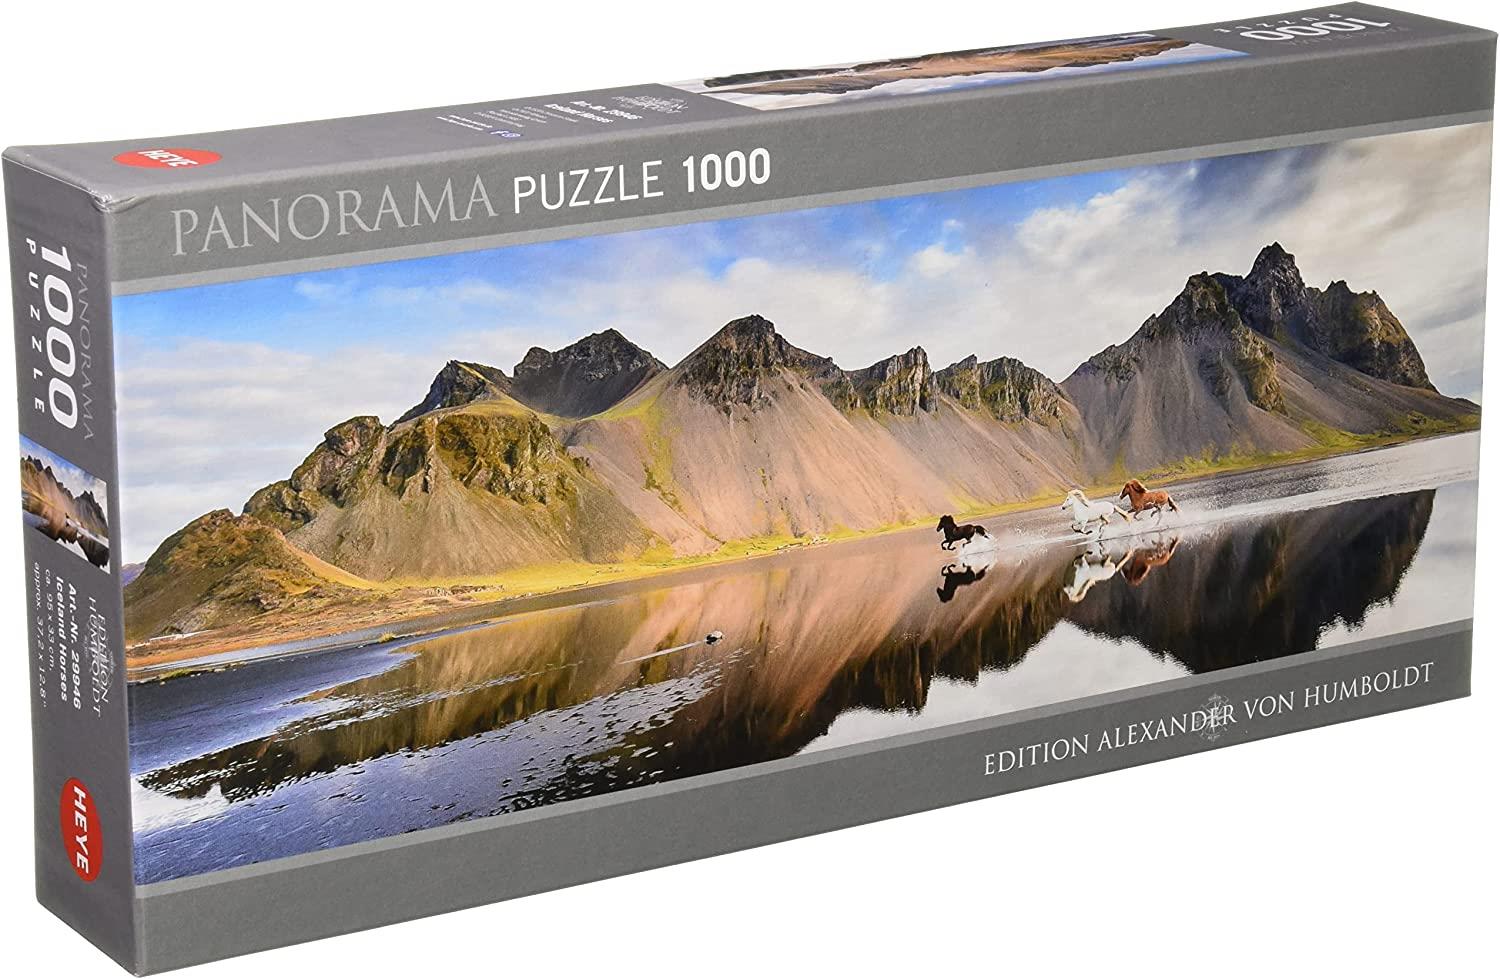 Heye Humboldt Iceland Horses Panorama Jigsaw Puzzle (1000 Pieces)